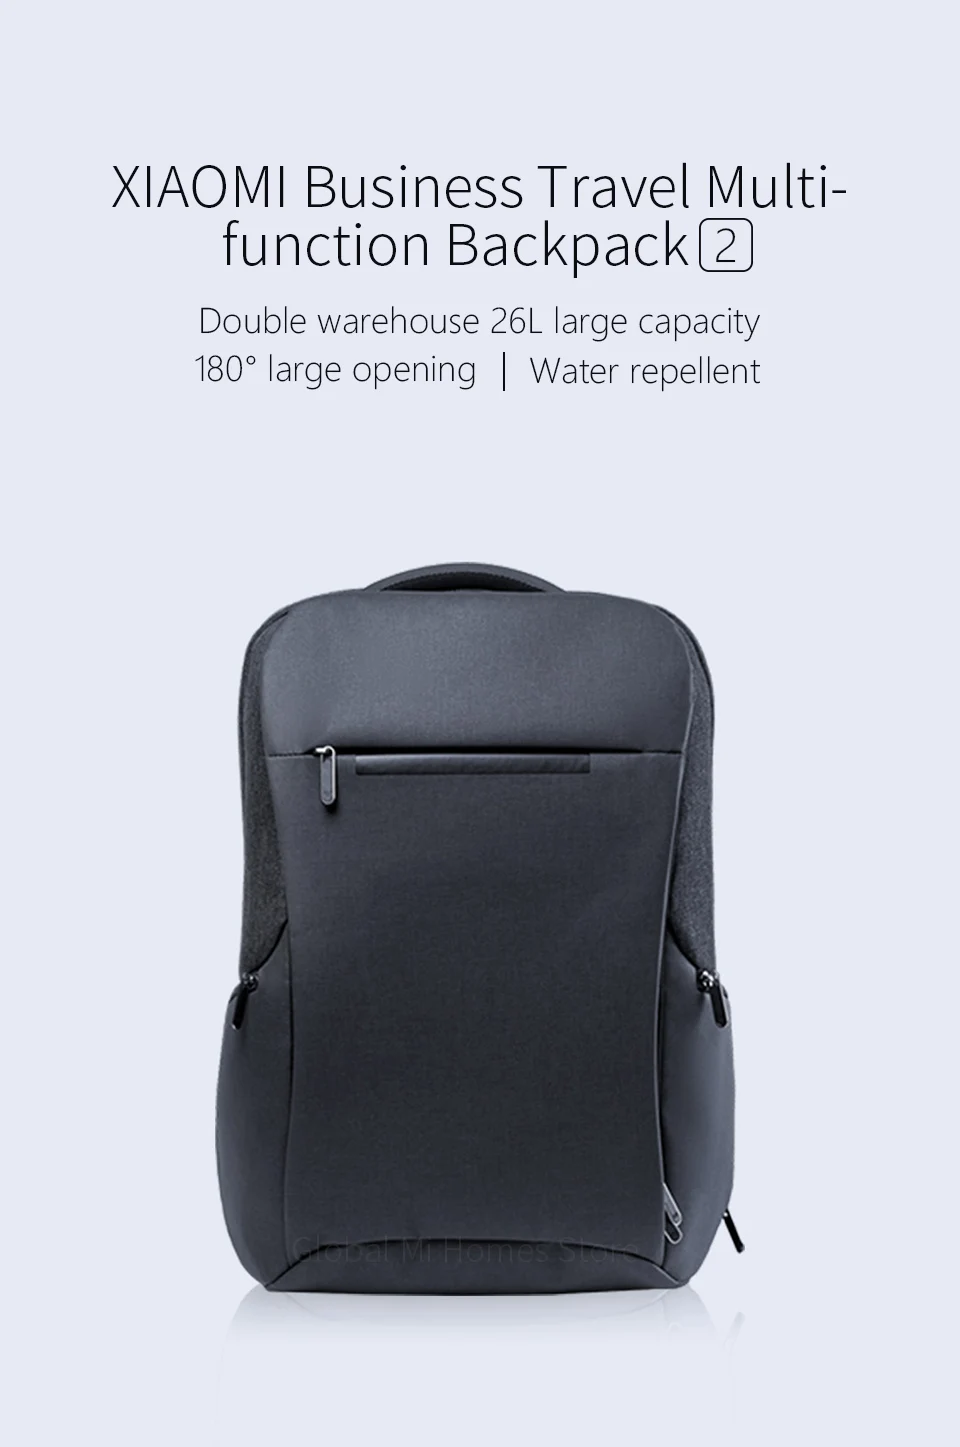 Xiaomi Mijia Double warehouse 26L многофункциональная сумка на плечо для деловых поездок 2 темно-серого цвета